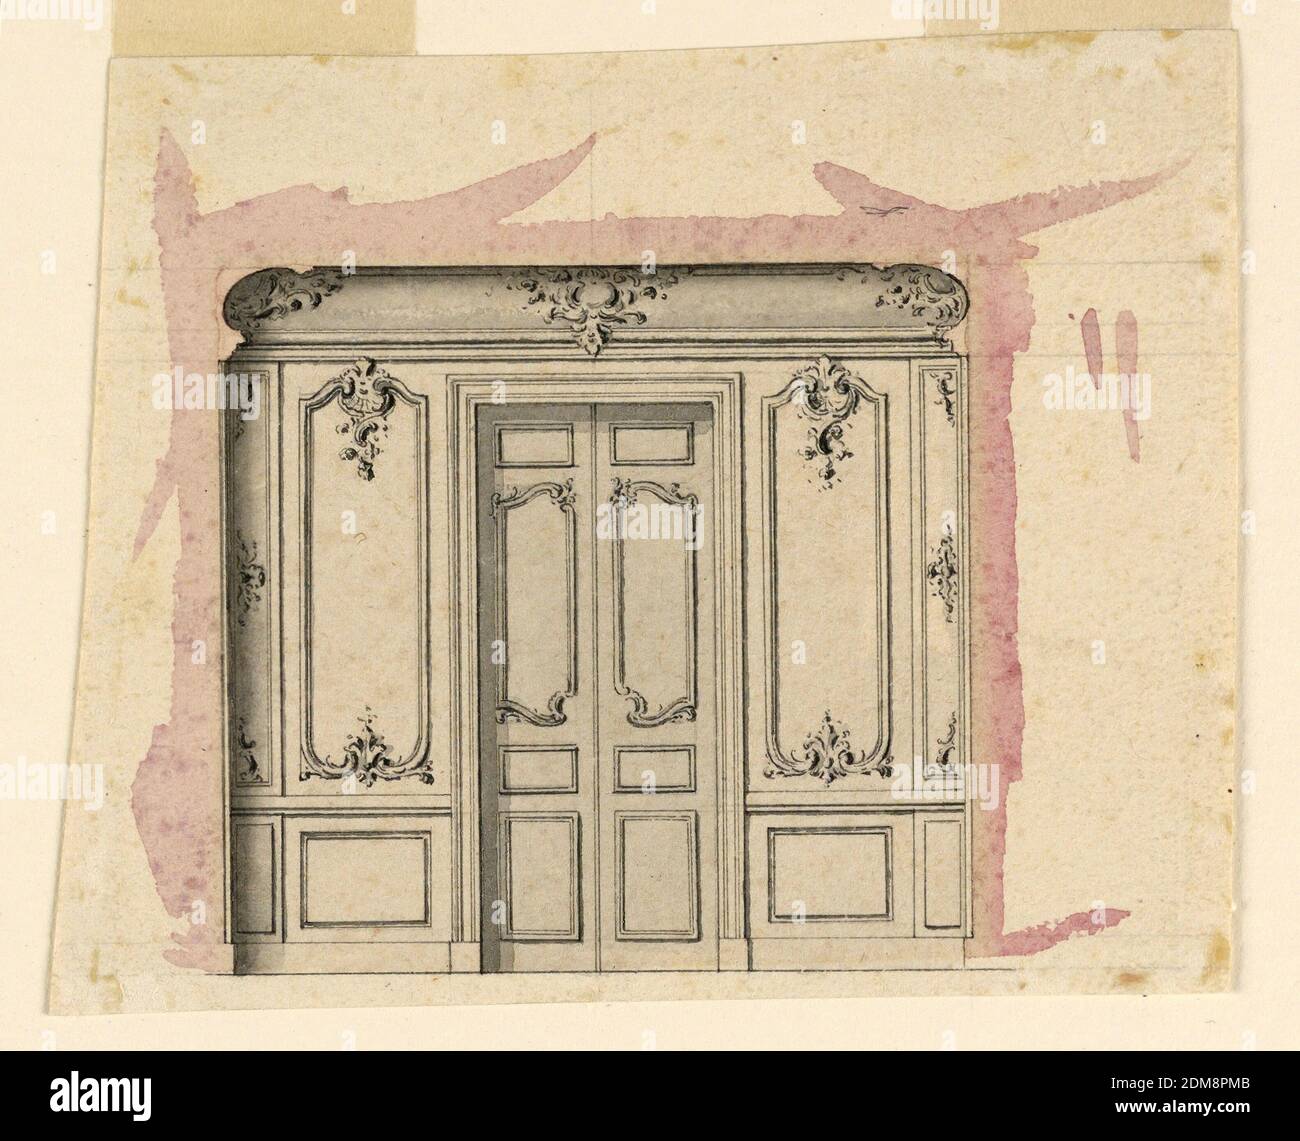 Design pour un mur de salon, stylo et encre, pinceau et aquarelle, graphite sur papier, UNE porte pliante entre deux panneaux muraux de miroir., France, ca. 1760, dessin Banque D'Images